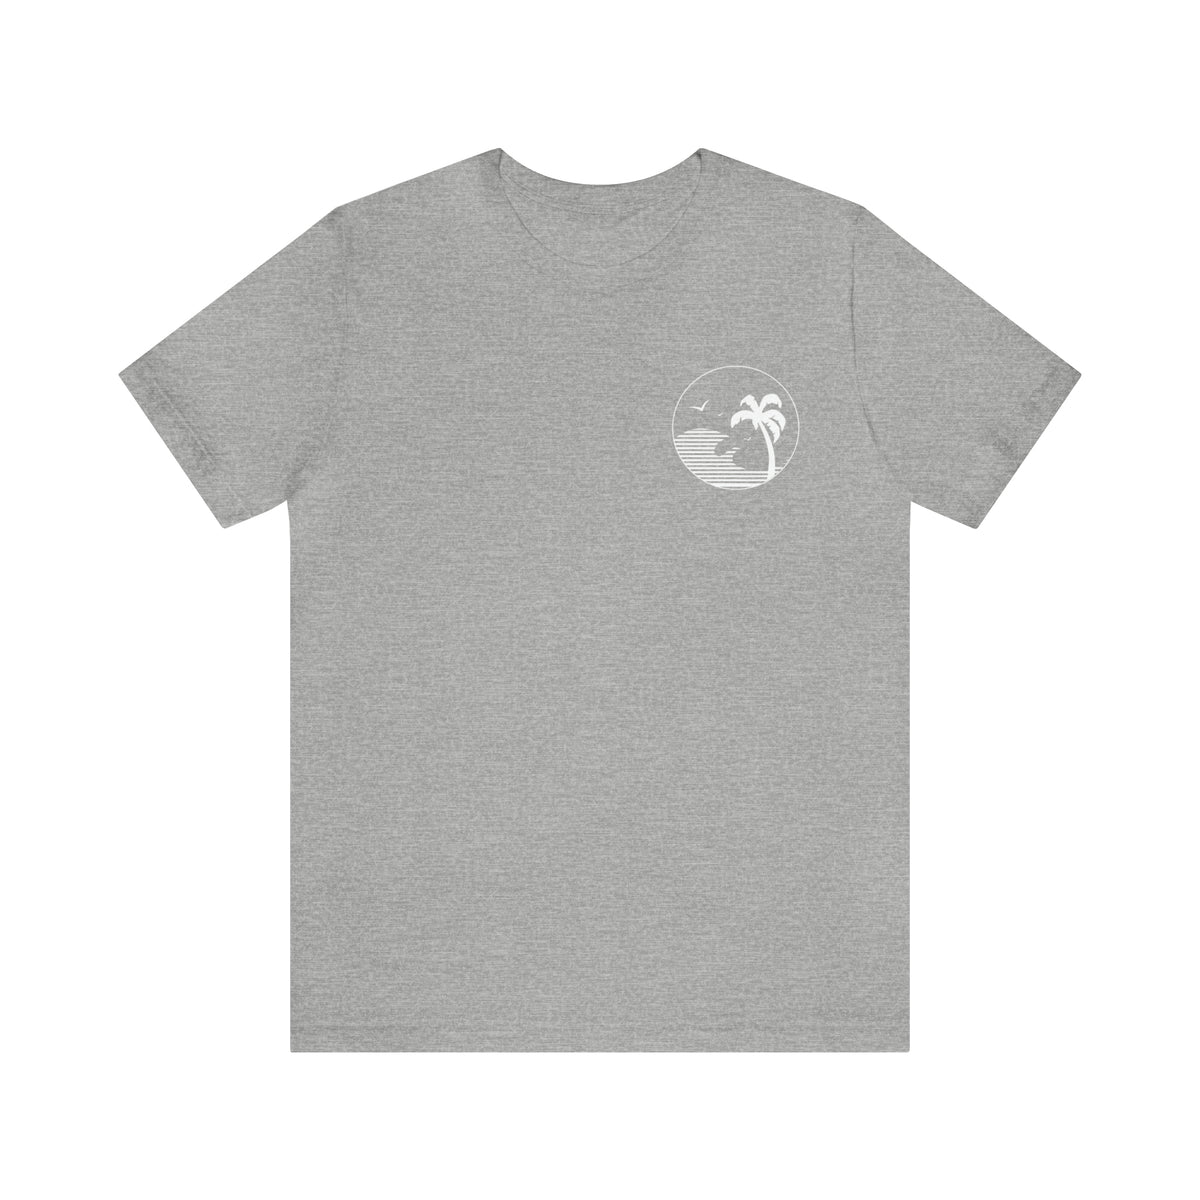 Beach Bum Shirt | Beach Life Shirt | Beach Lover Gift | Ocean Lover Gift | Unisex Jersey T-shirt